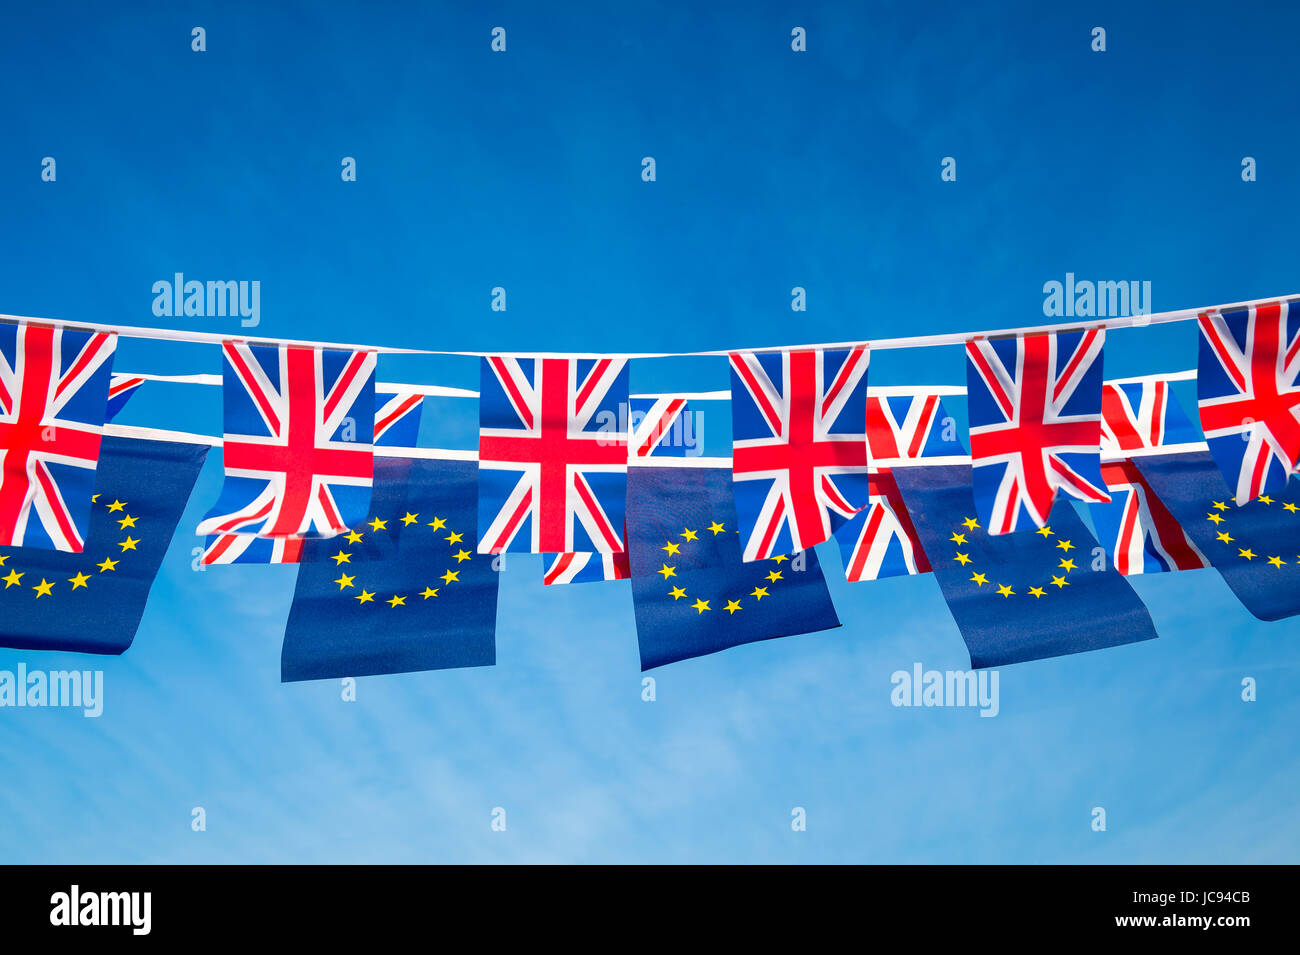 Europäischen Union und der britische Union Jack Flag Bunting fliegen im strahlend blauen Himmel in einer Erklärung der Brexit EU-Verhandlungen Stockfoto